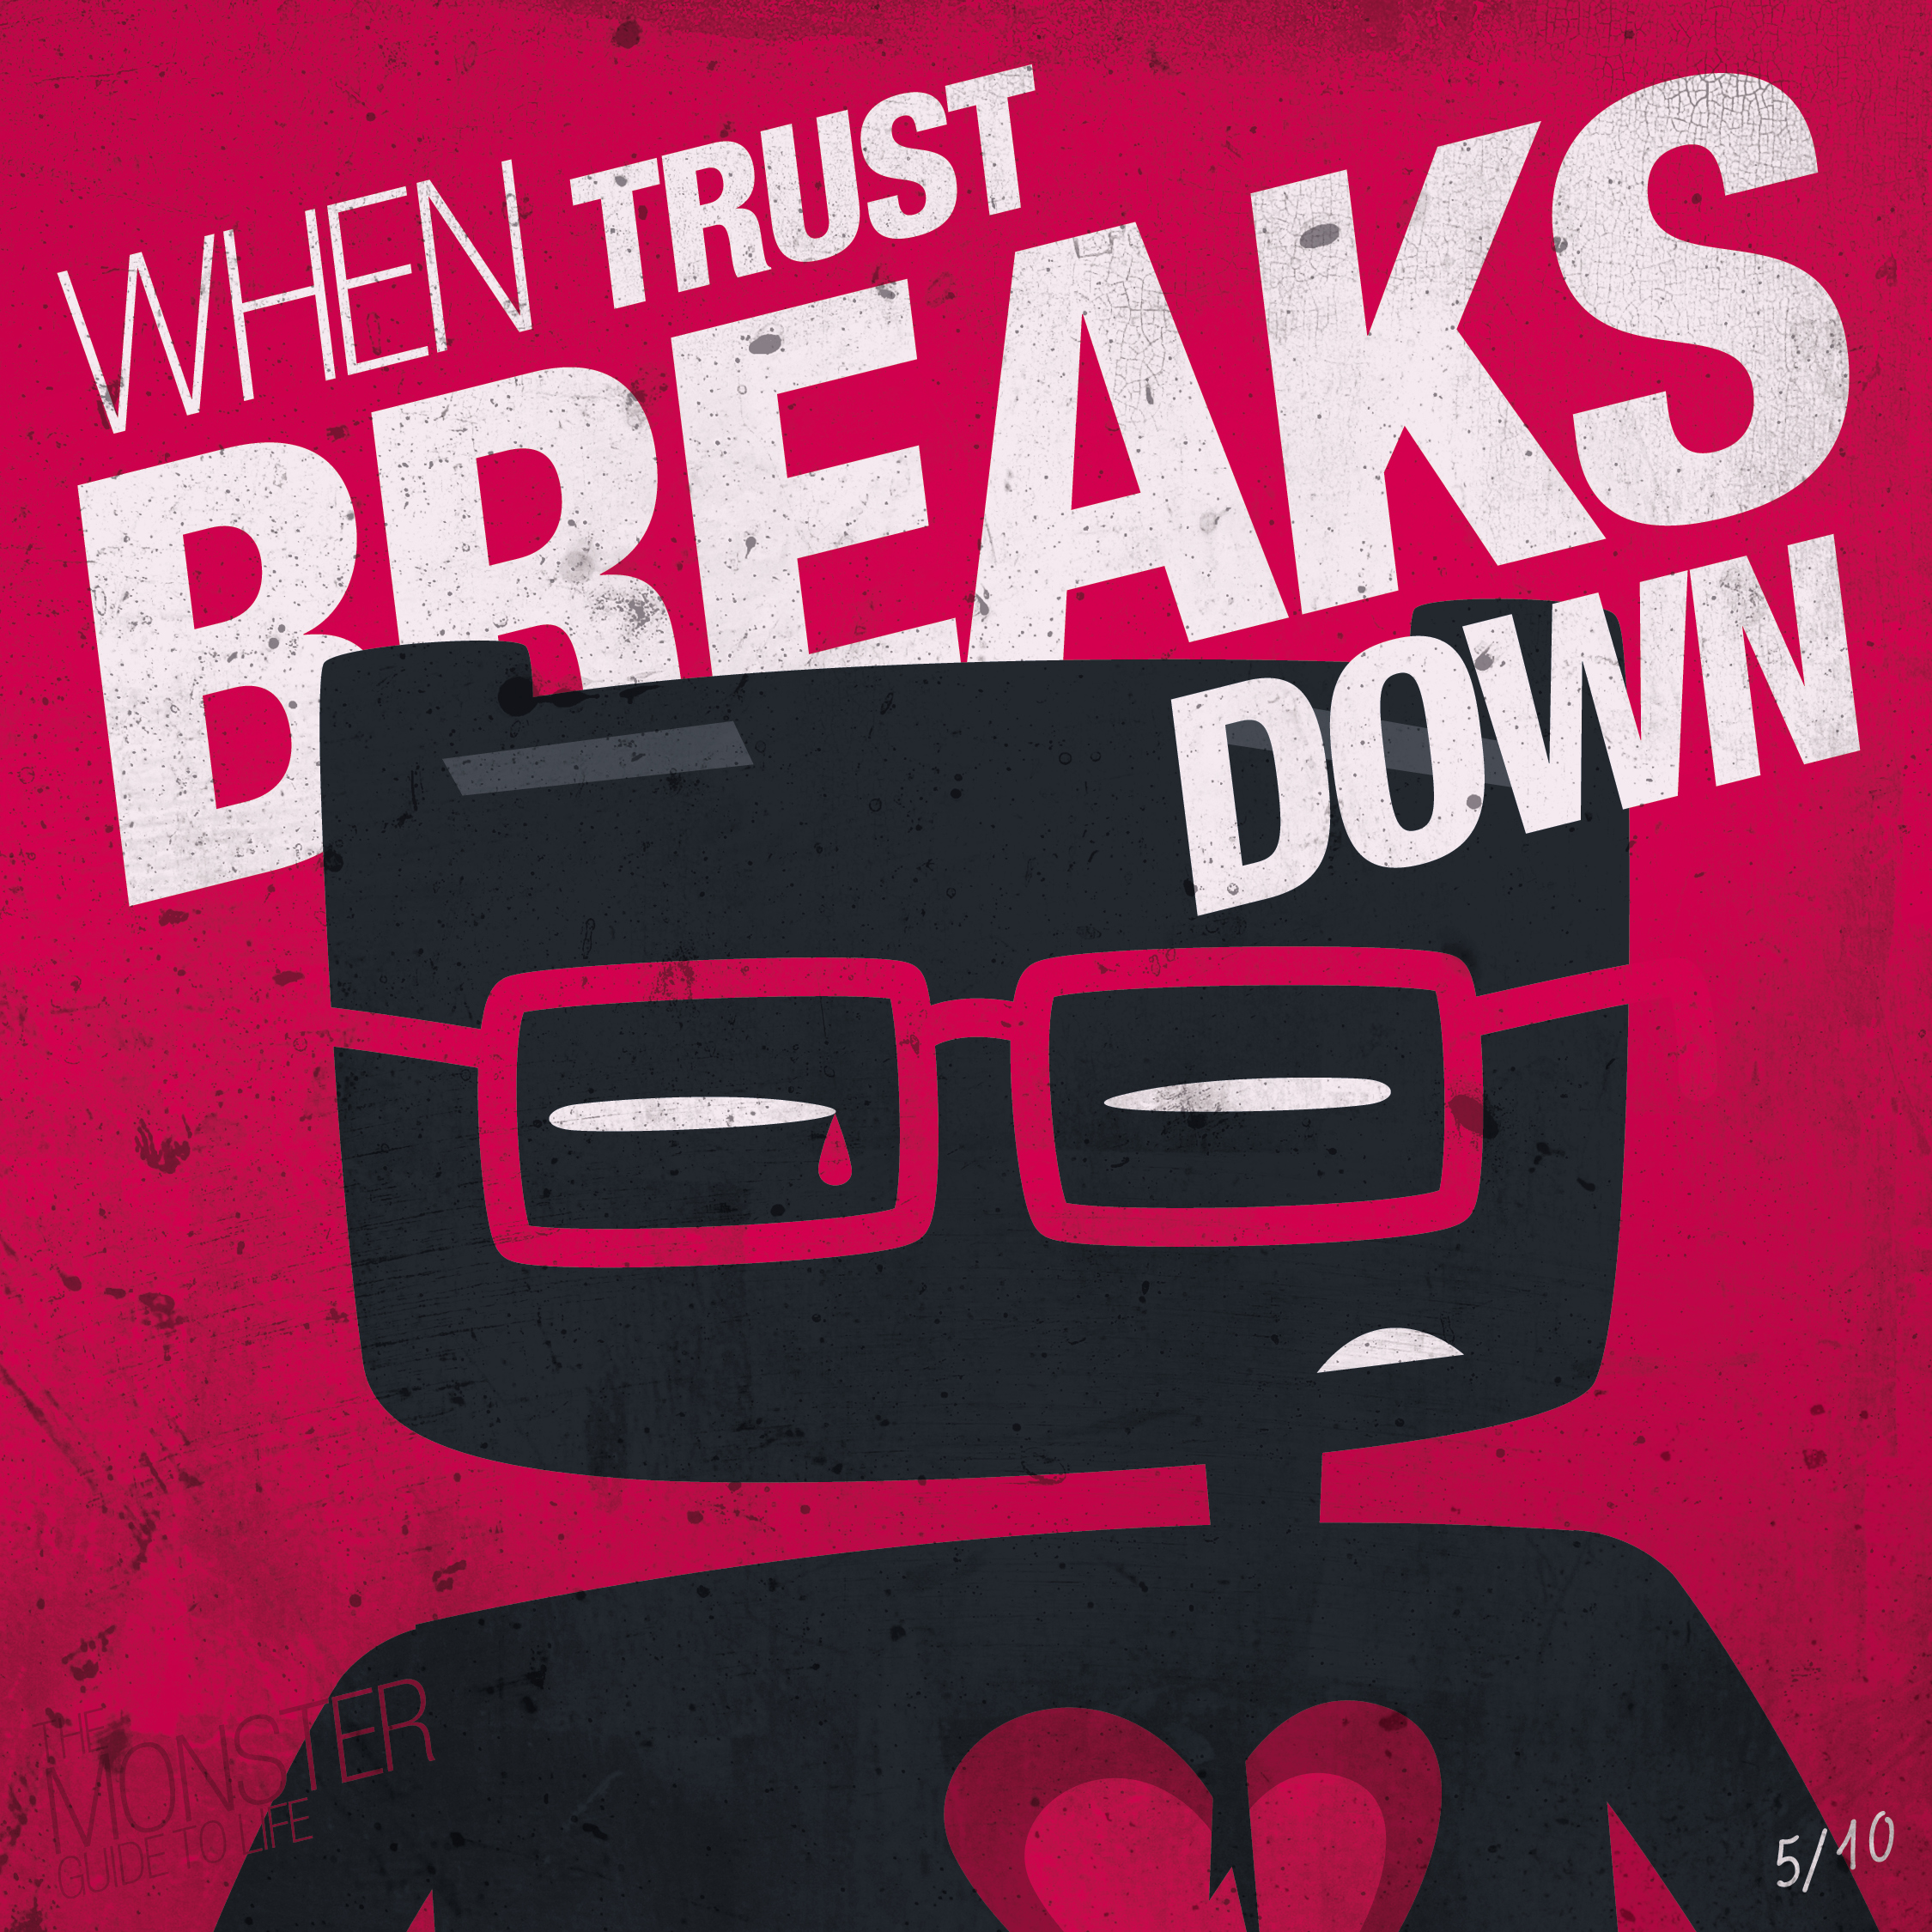 When trust breaks down